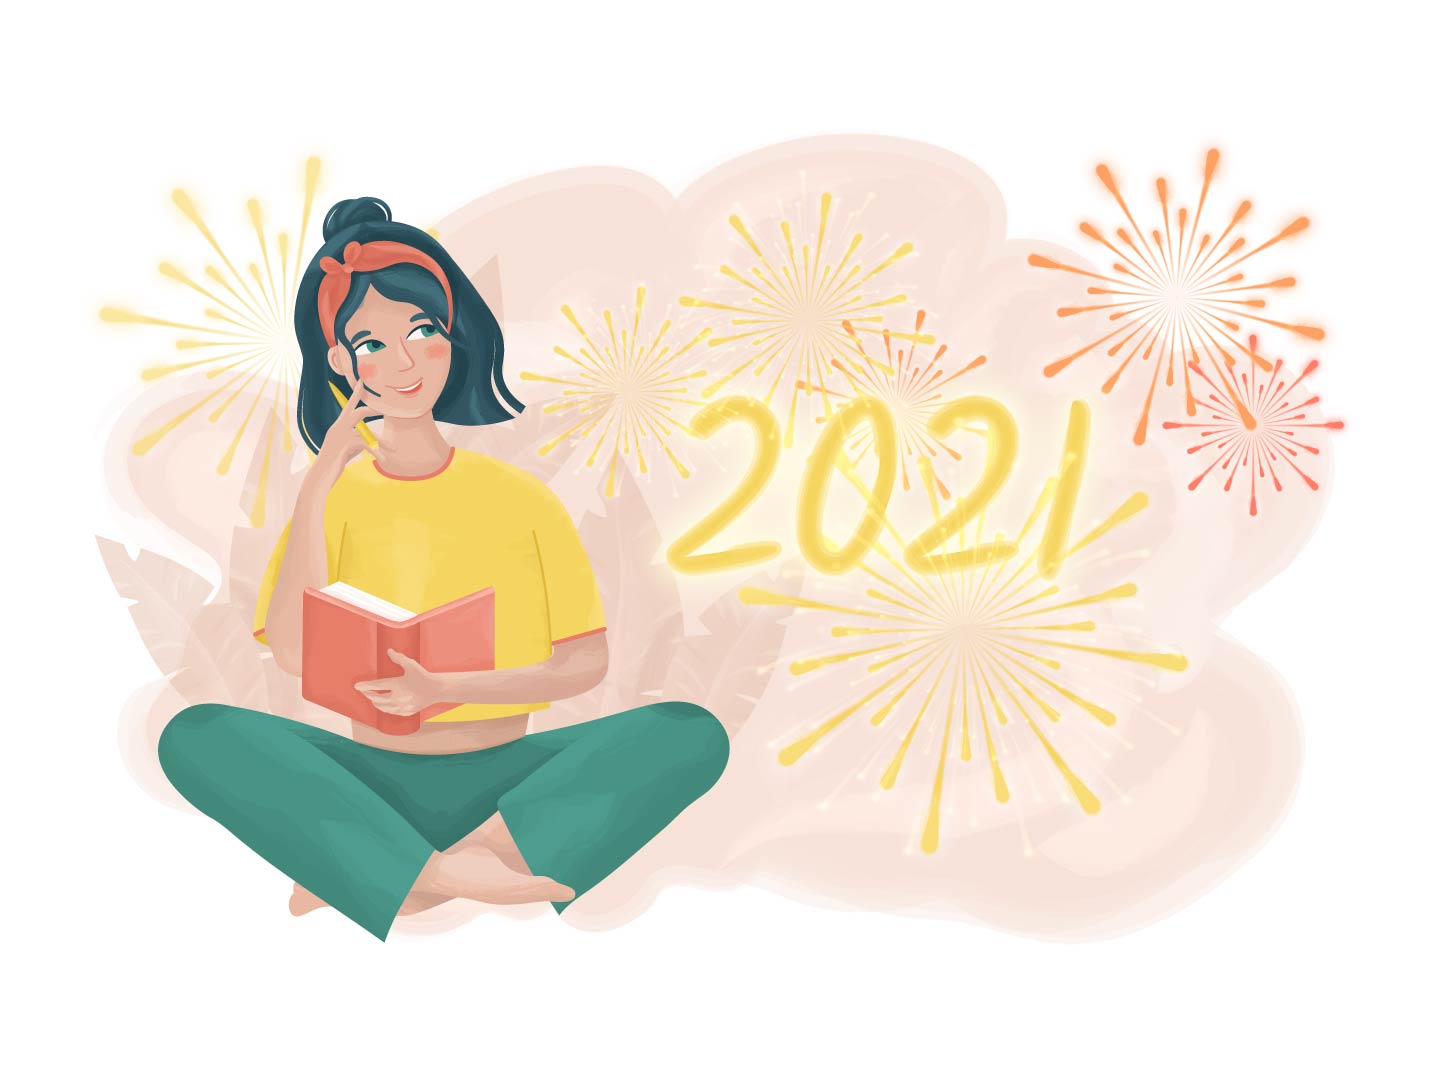 New Year’s Resolution: 10 τρόποι για να αποφύγεις την απογοήτευση το 2021